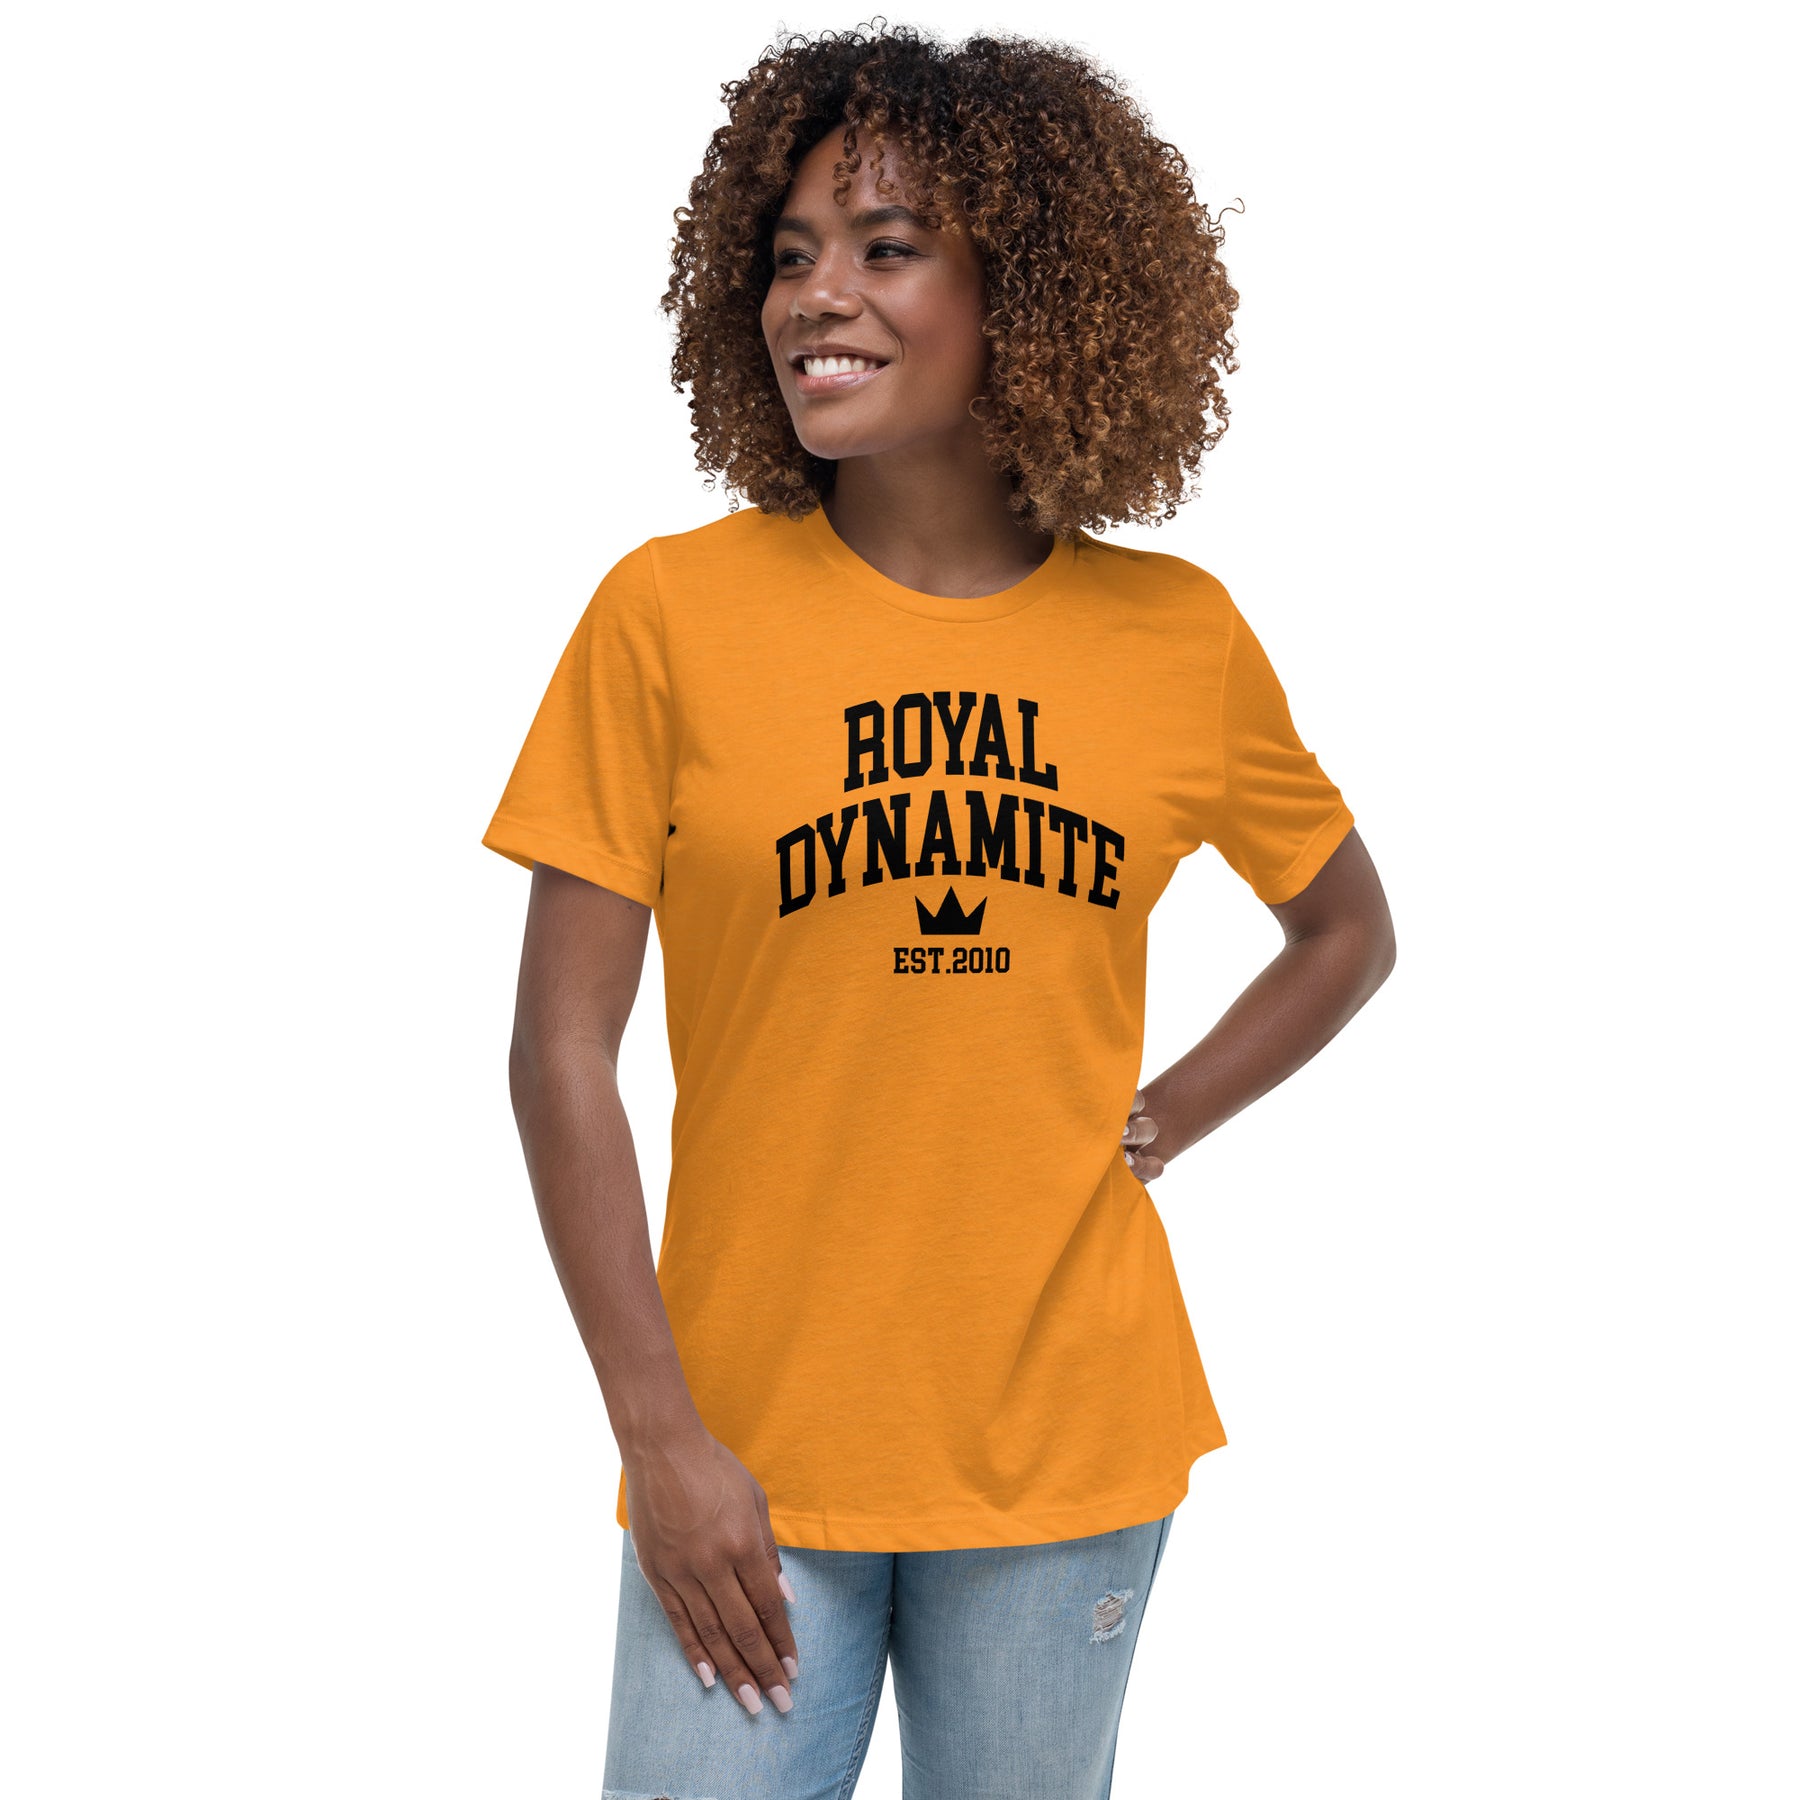 New Royal Dynamite T-Shirt Women